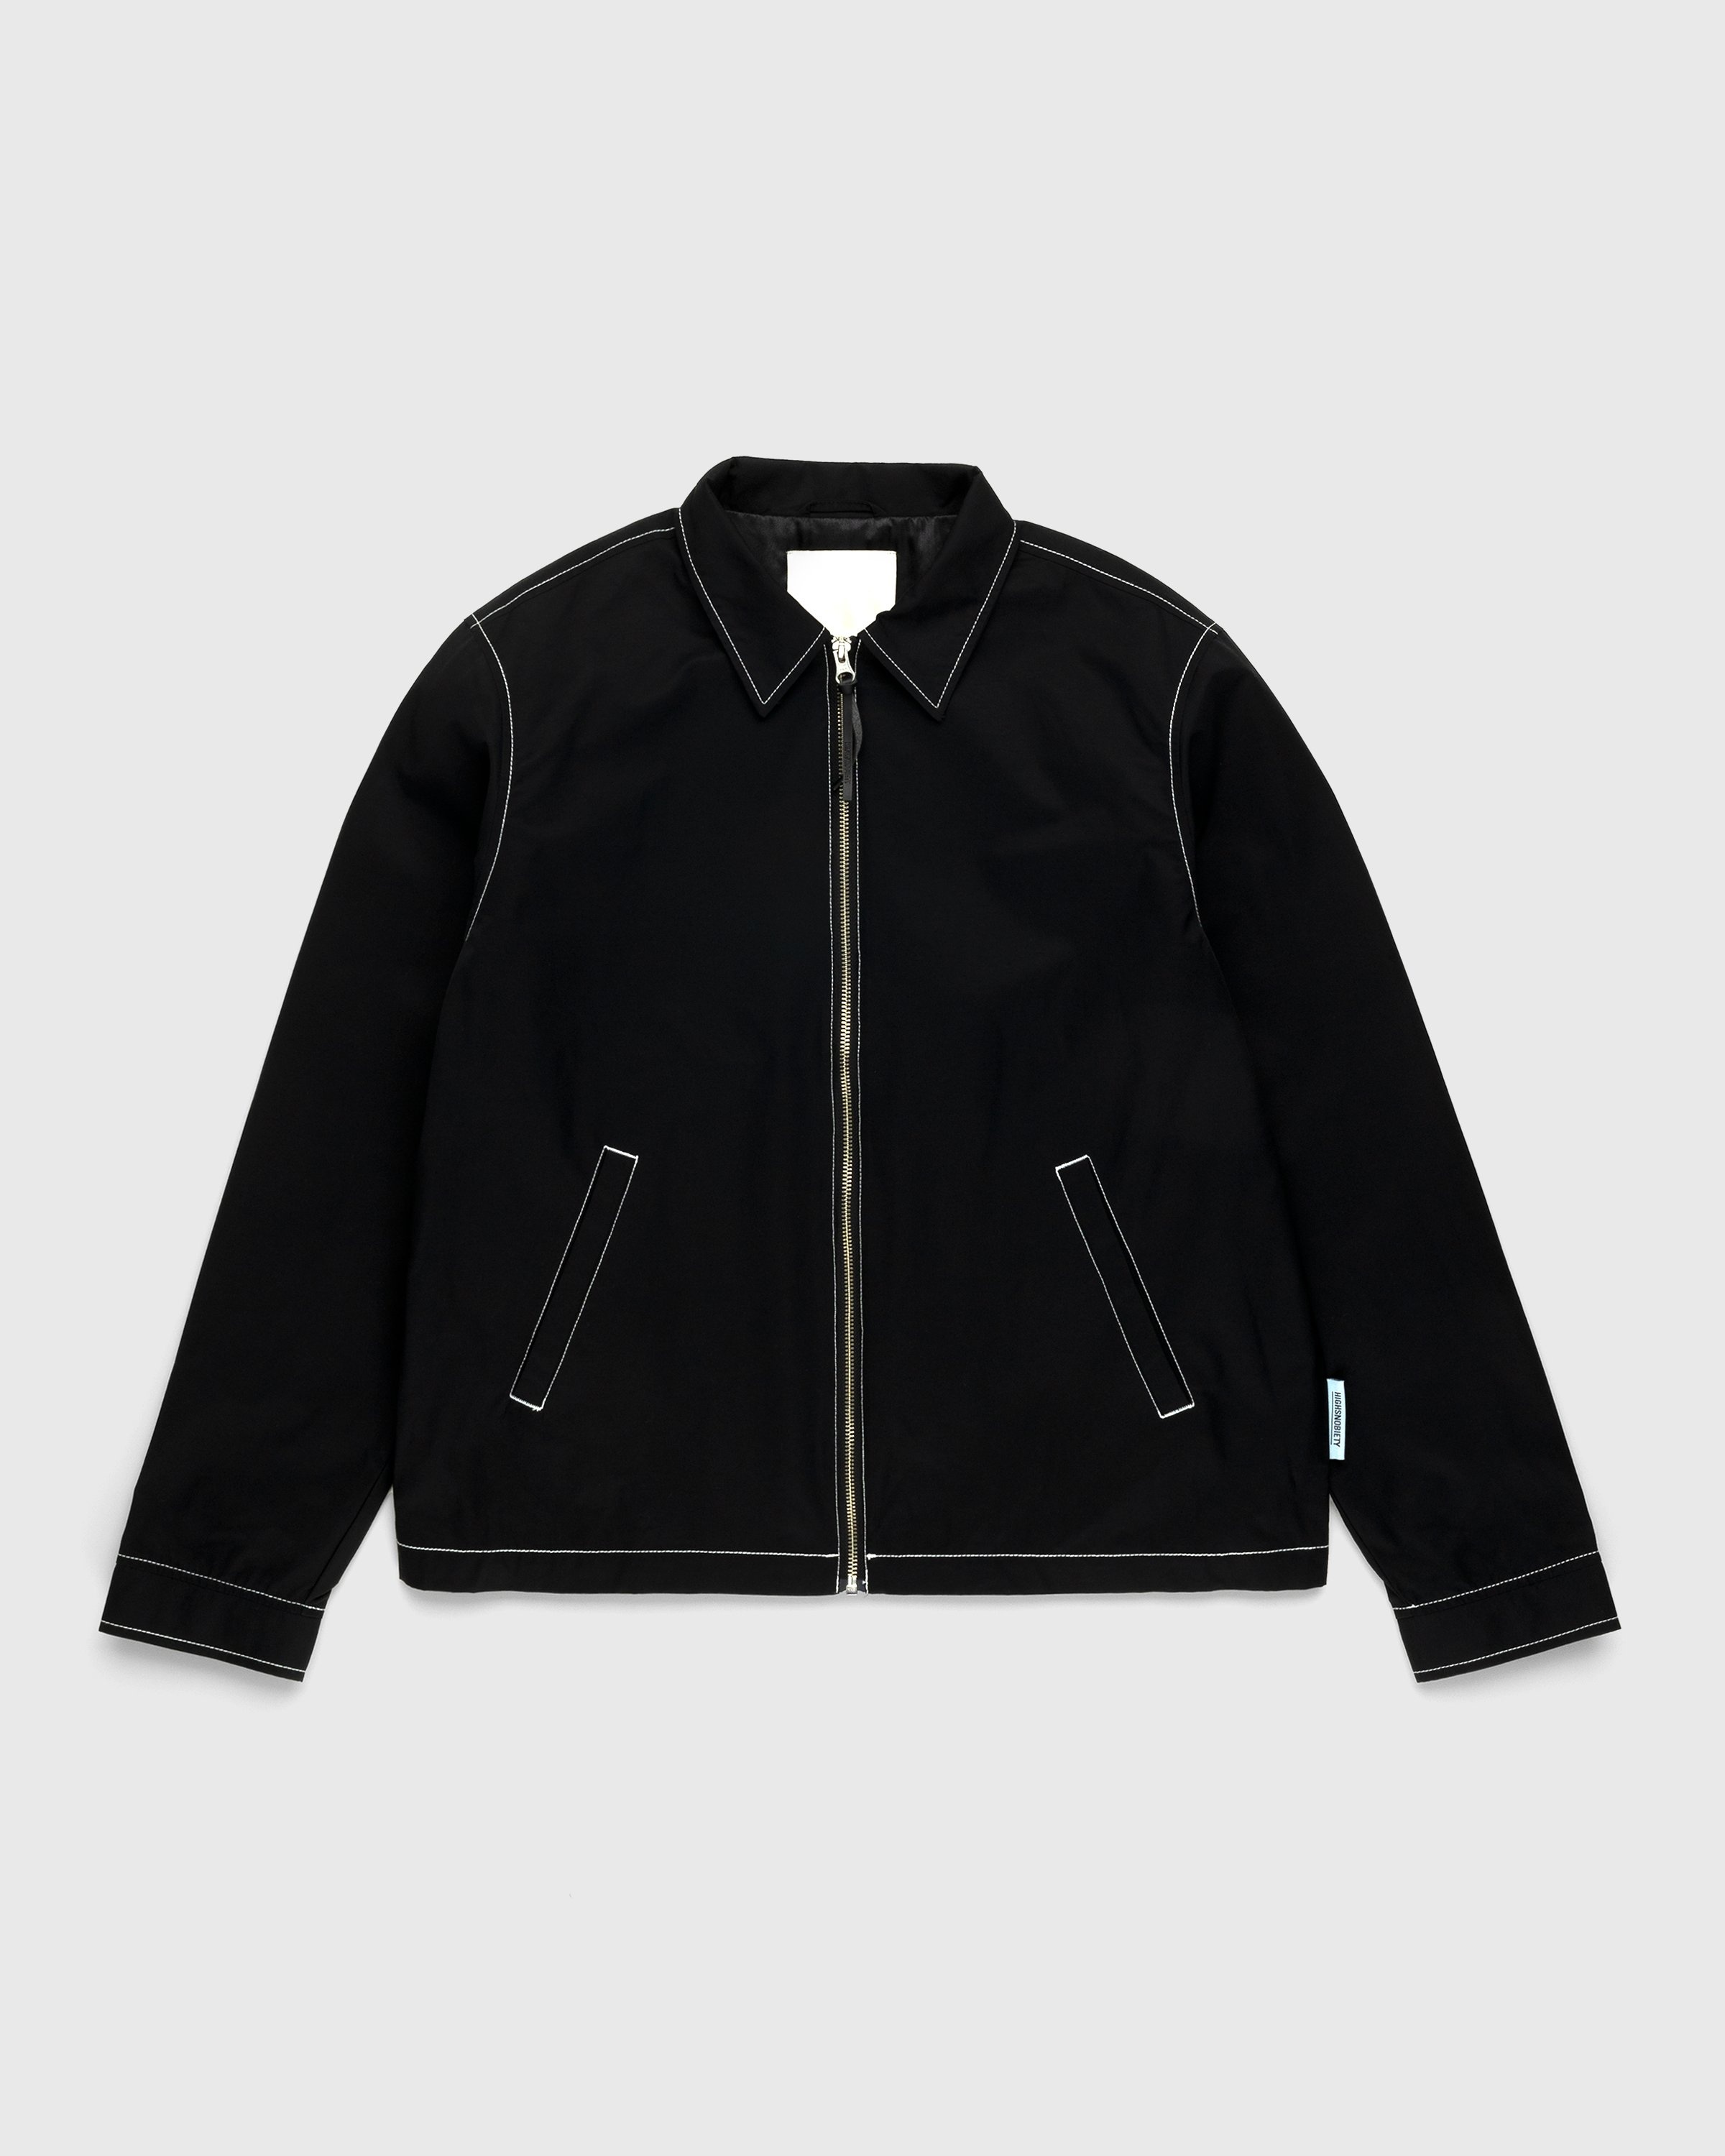 Highsnobiety – Brushed Nylon Jacket Black - Jackets - Black - Image 1